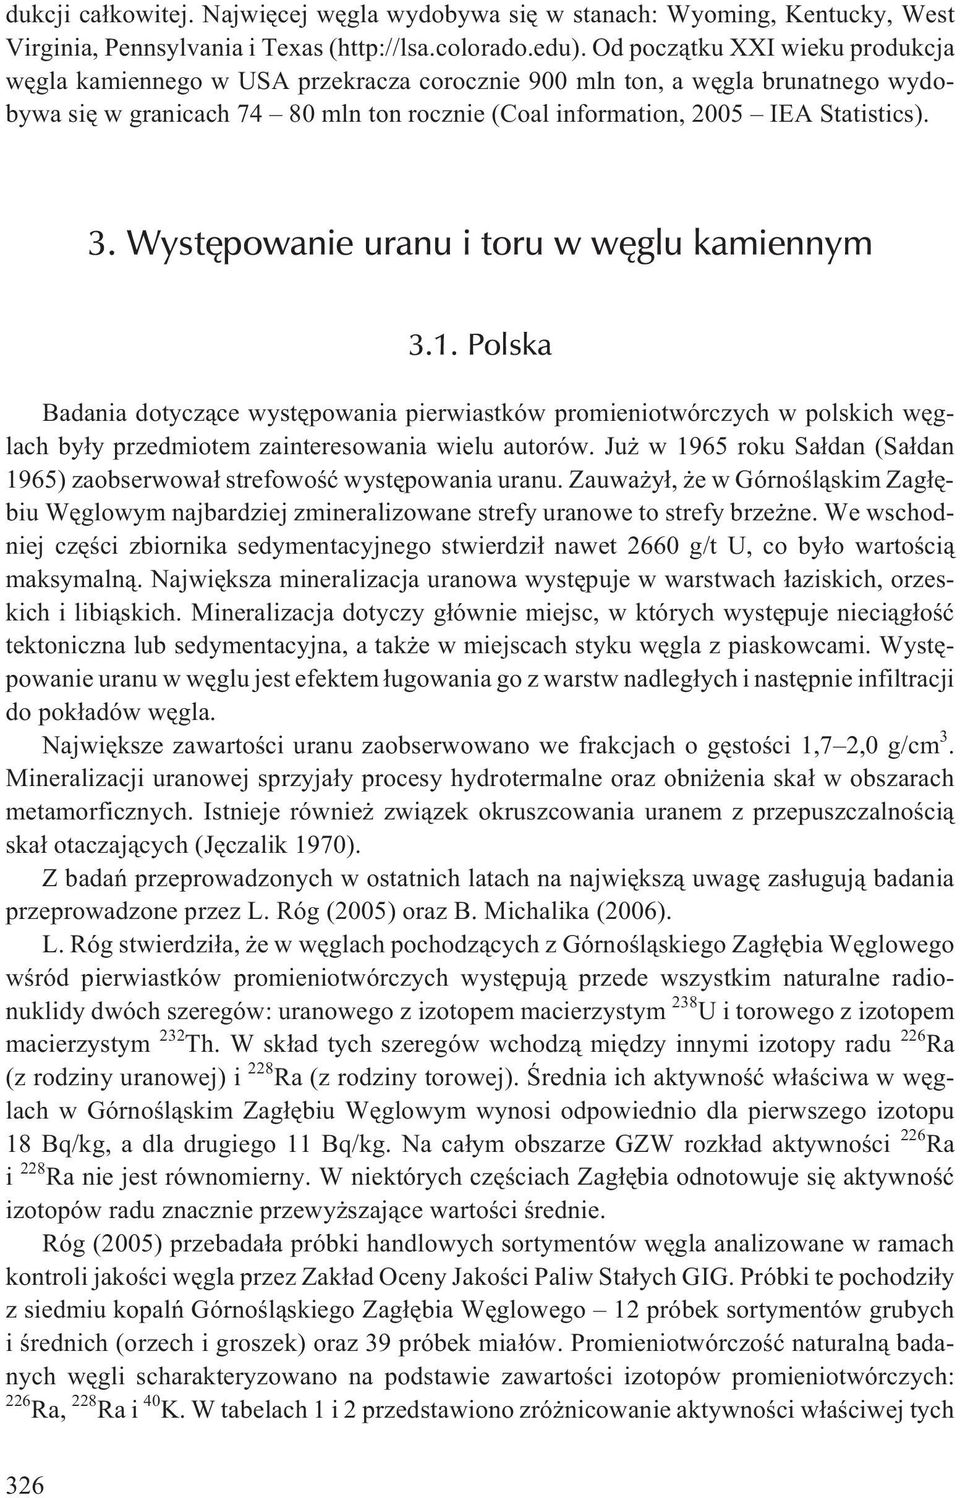 Wystêpowanie uranu i toru w wêglu kamiennym 3.1. Polska Badania dotycz¹ce wystêpowania pierwiastków promieniotwórczych w polskich wêglach by³y przedmiotem zainteresowania wielu autorów.